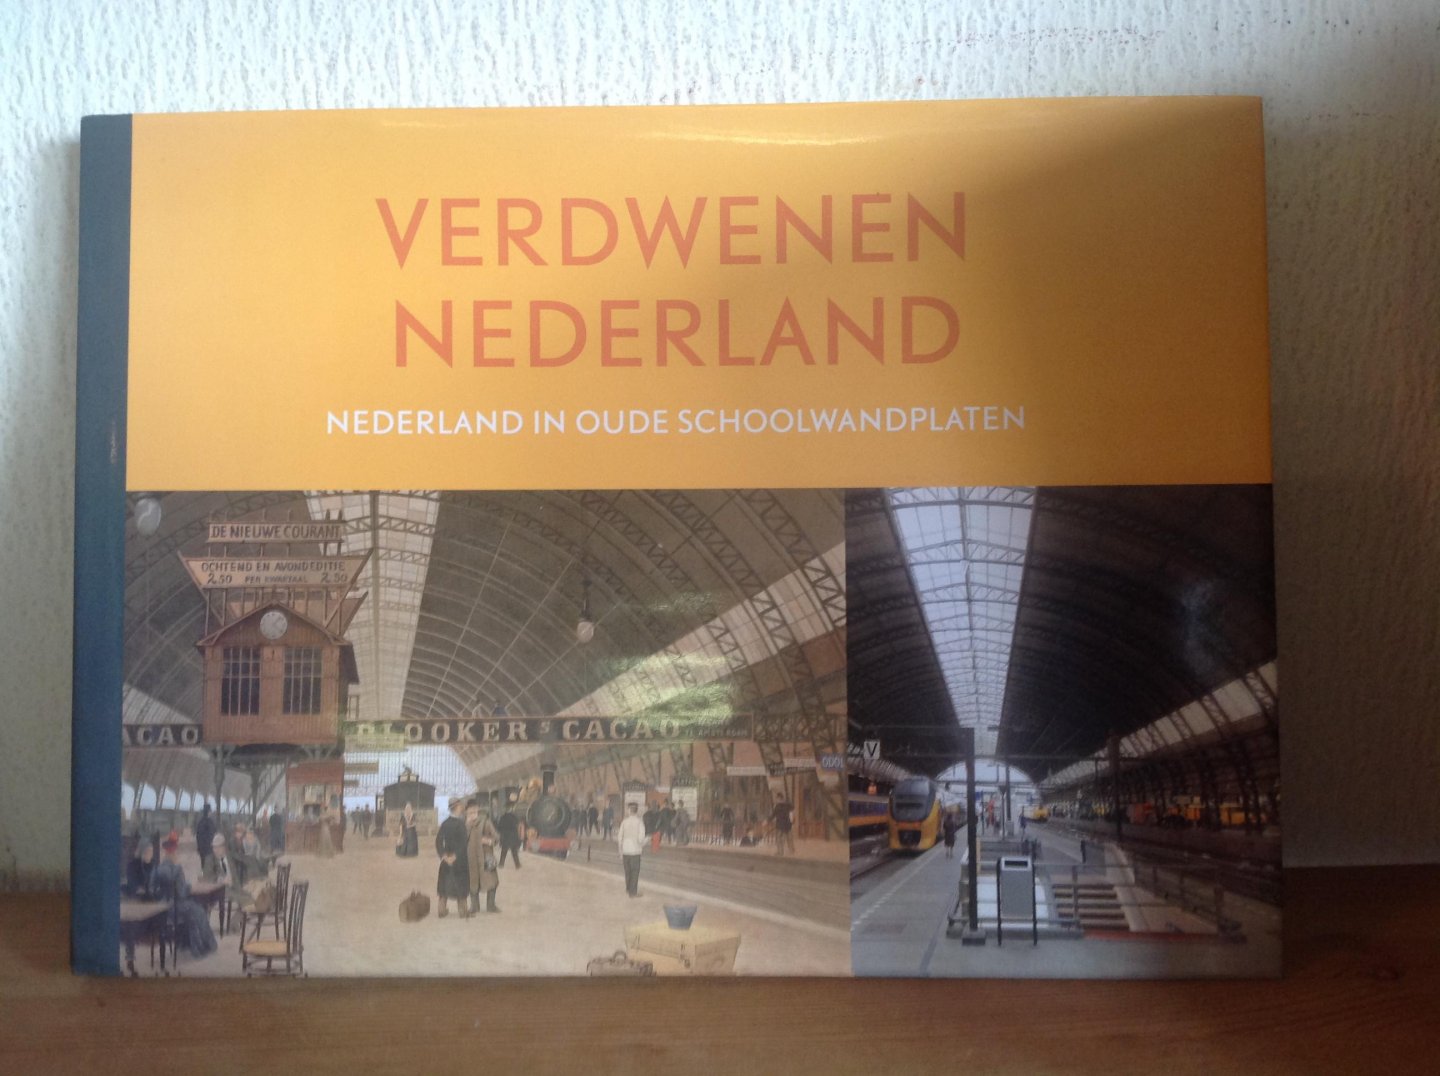  - Verdwenen Nederland / Nederland in oude schoolwandplaten